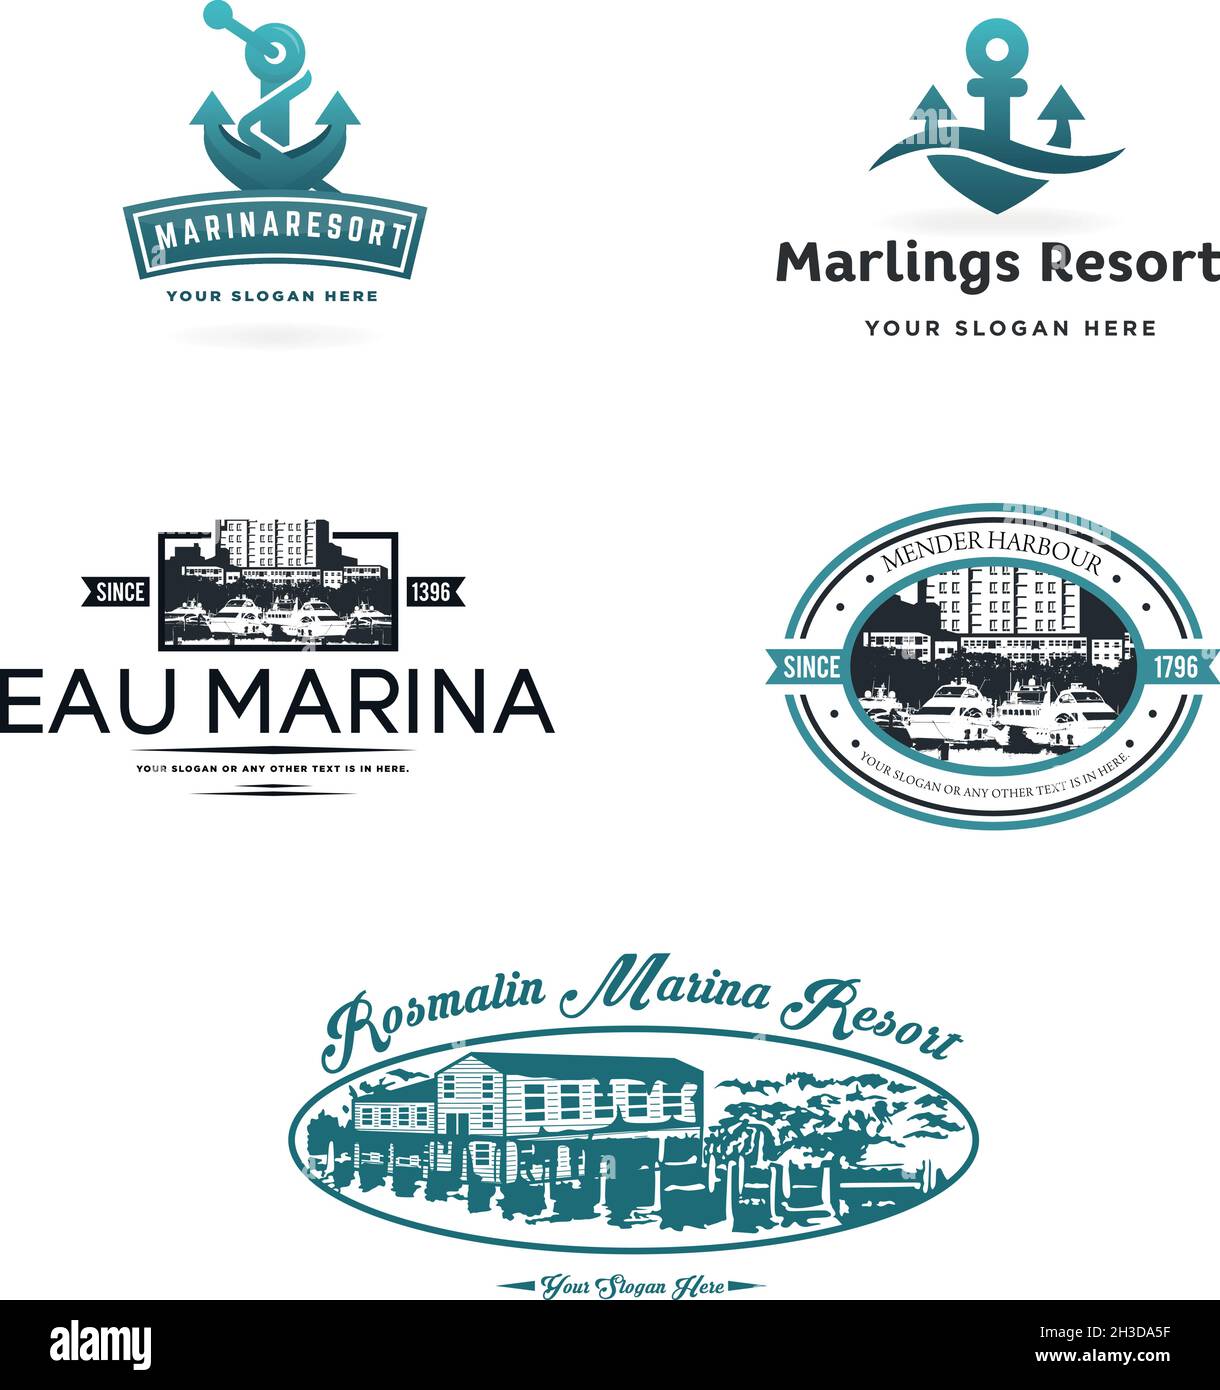 Design du logo de l'agence de voyages marine Yacht Harbor Resort Illustration de Vecteur